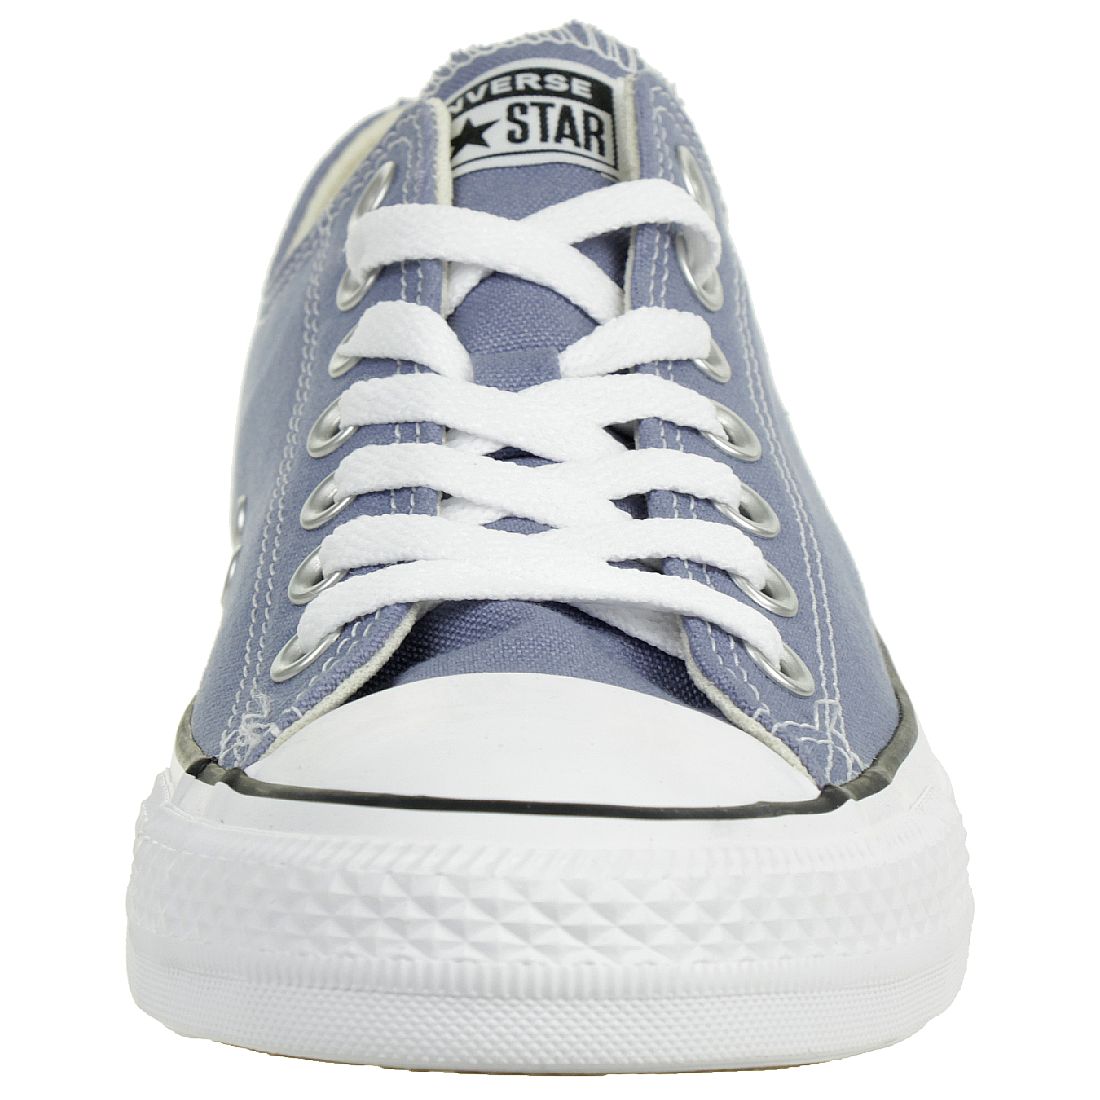 Converse CTAS OX Chuck Schuhe Textil Sneaker blau 164940C 